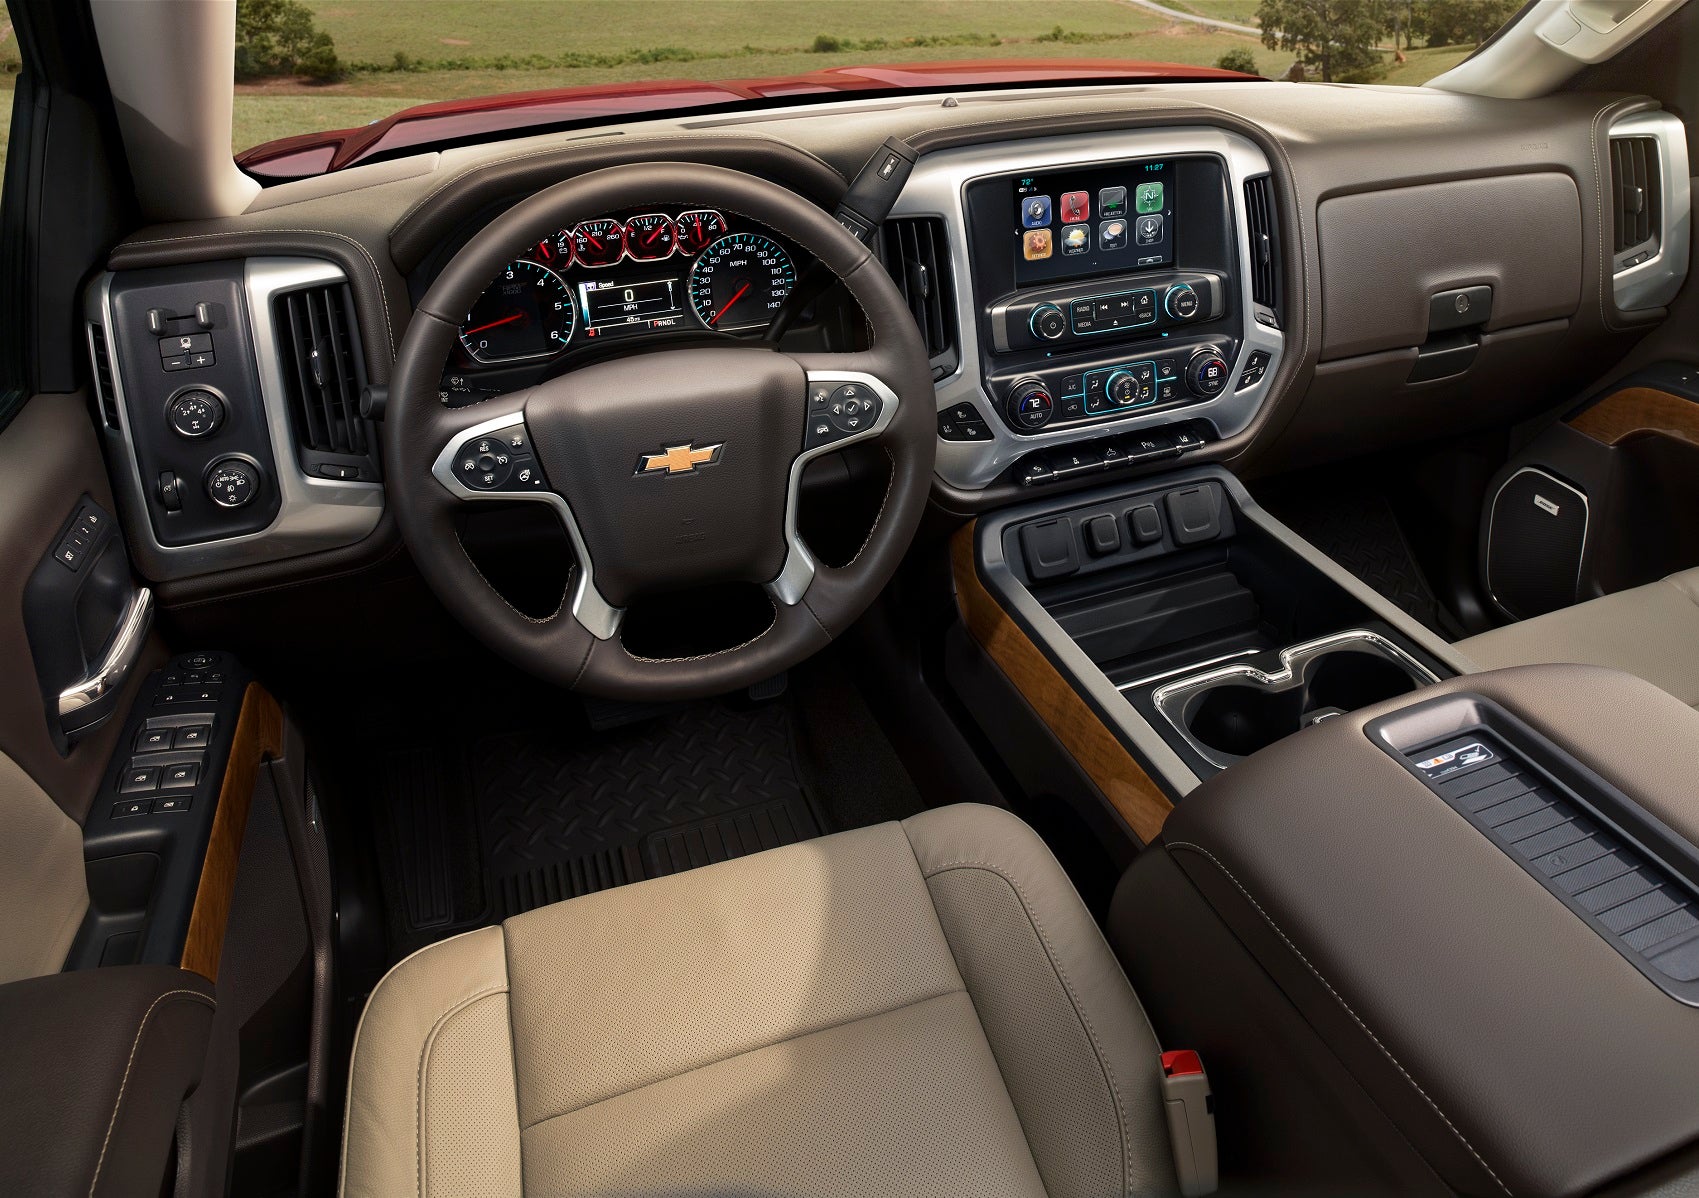 2019 Chevy Silverado Interior Technology Features 